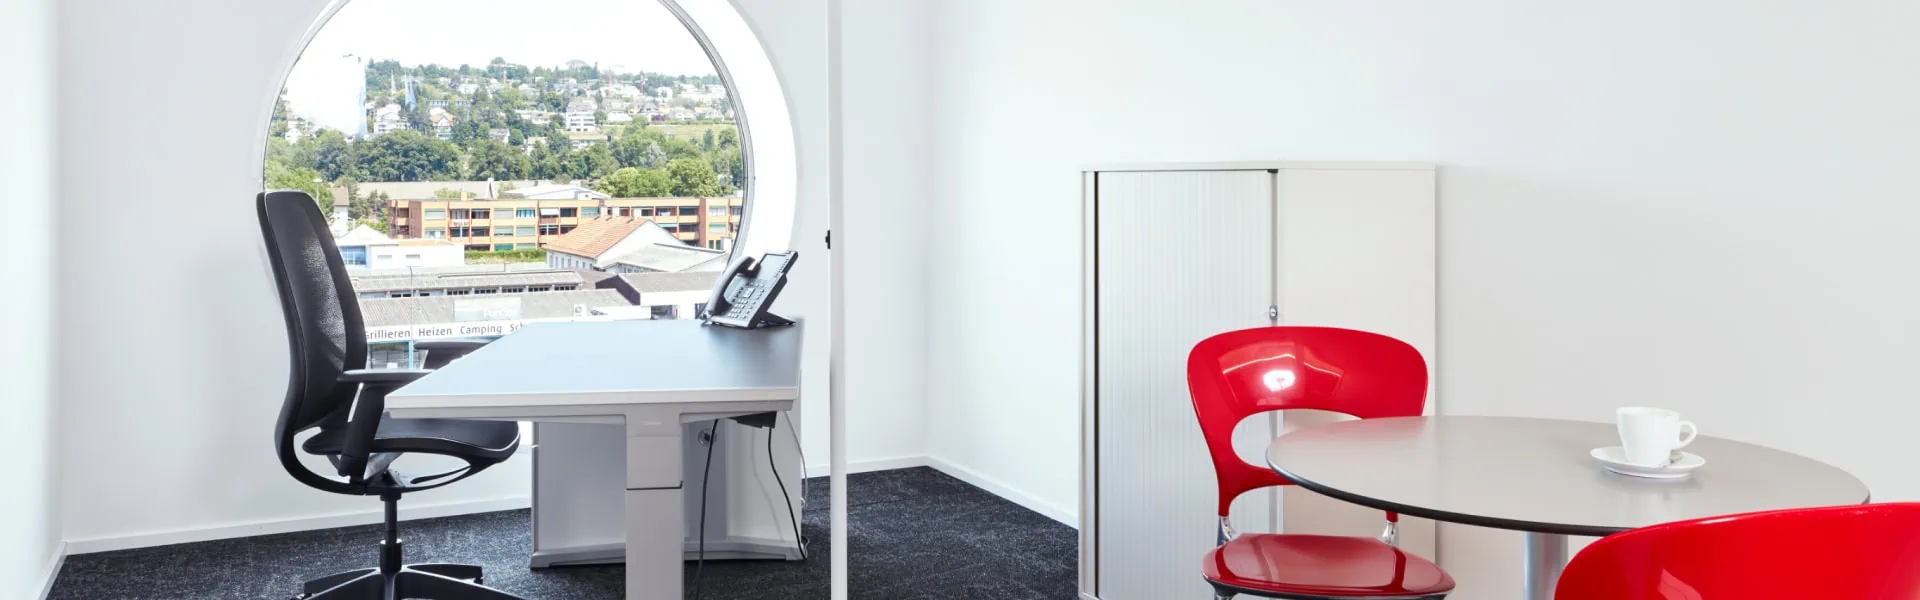 Einzelbüro mieten in Zürich - möbliertes kleiner Büroraum